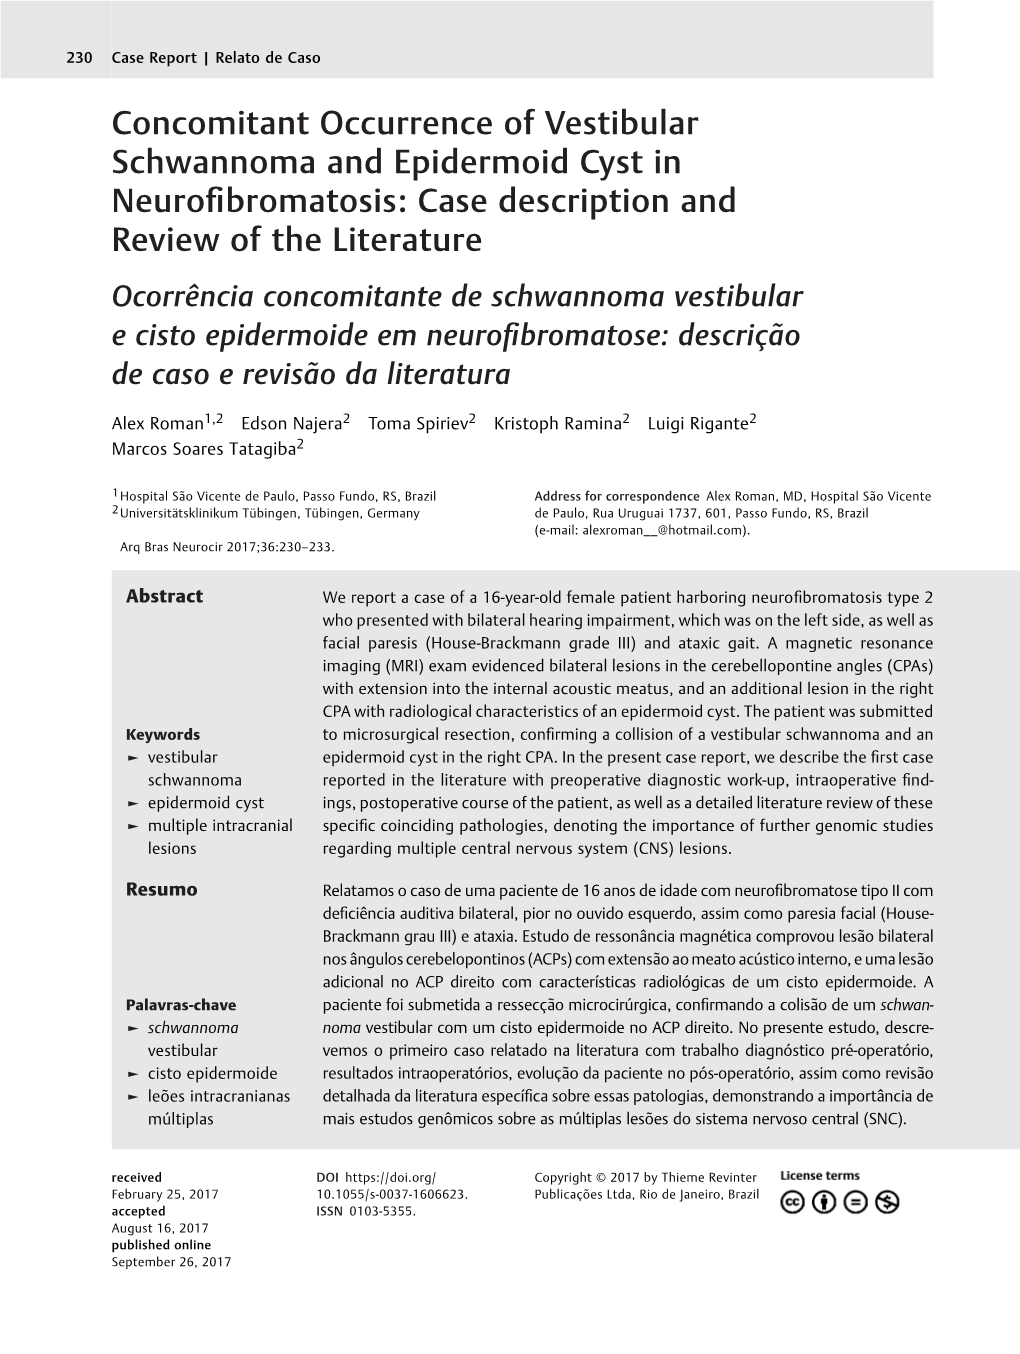 Concomitant Occurrence of Vestibular